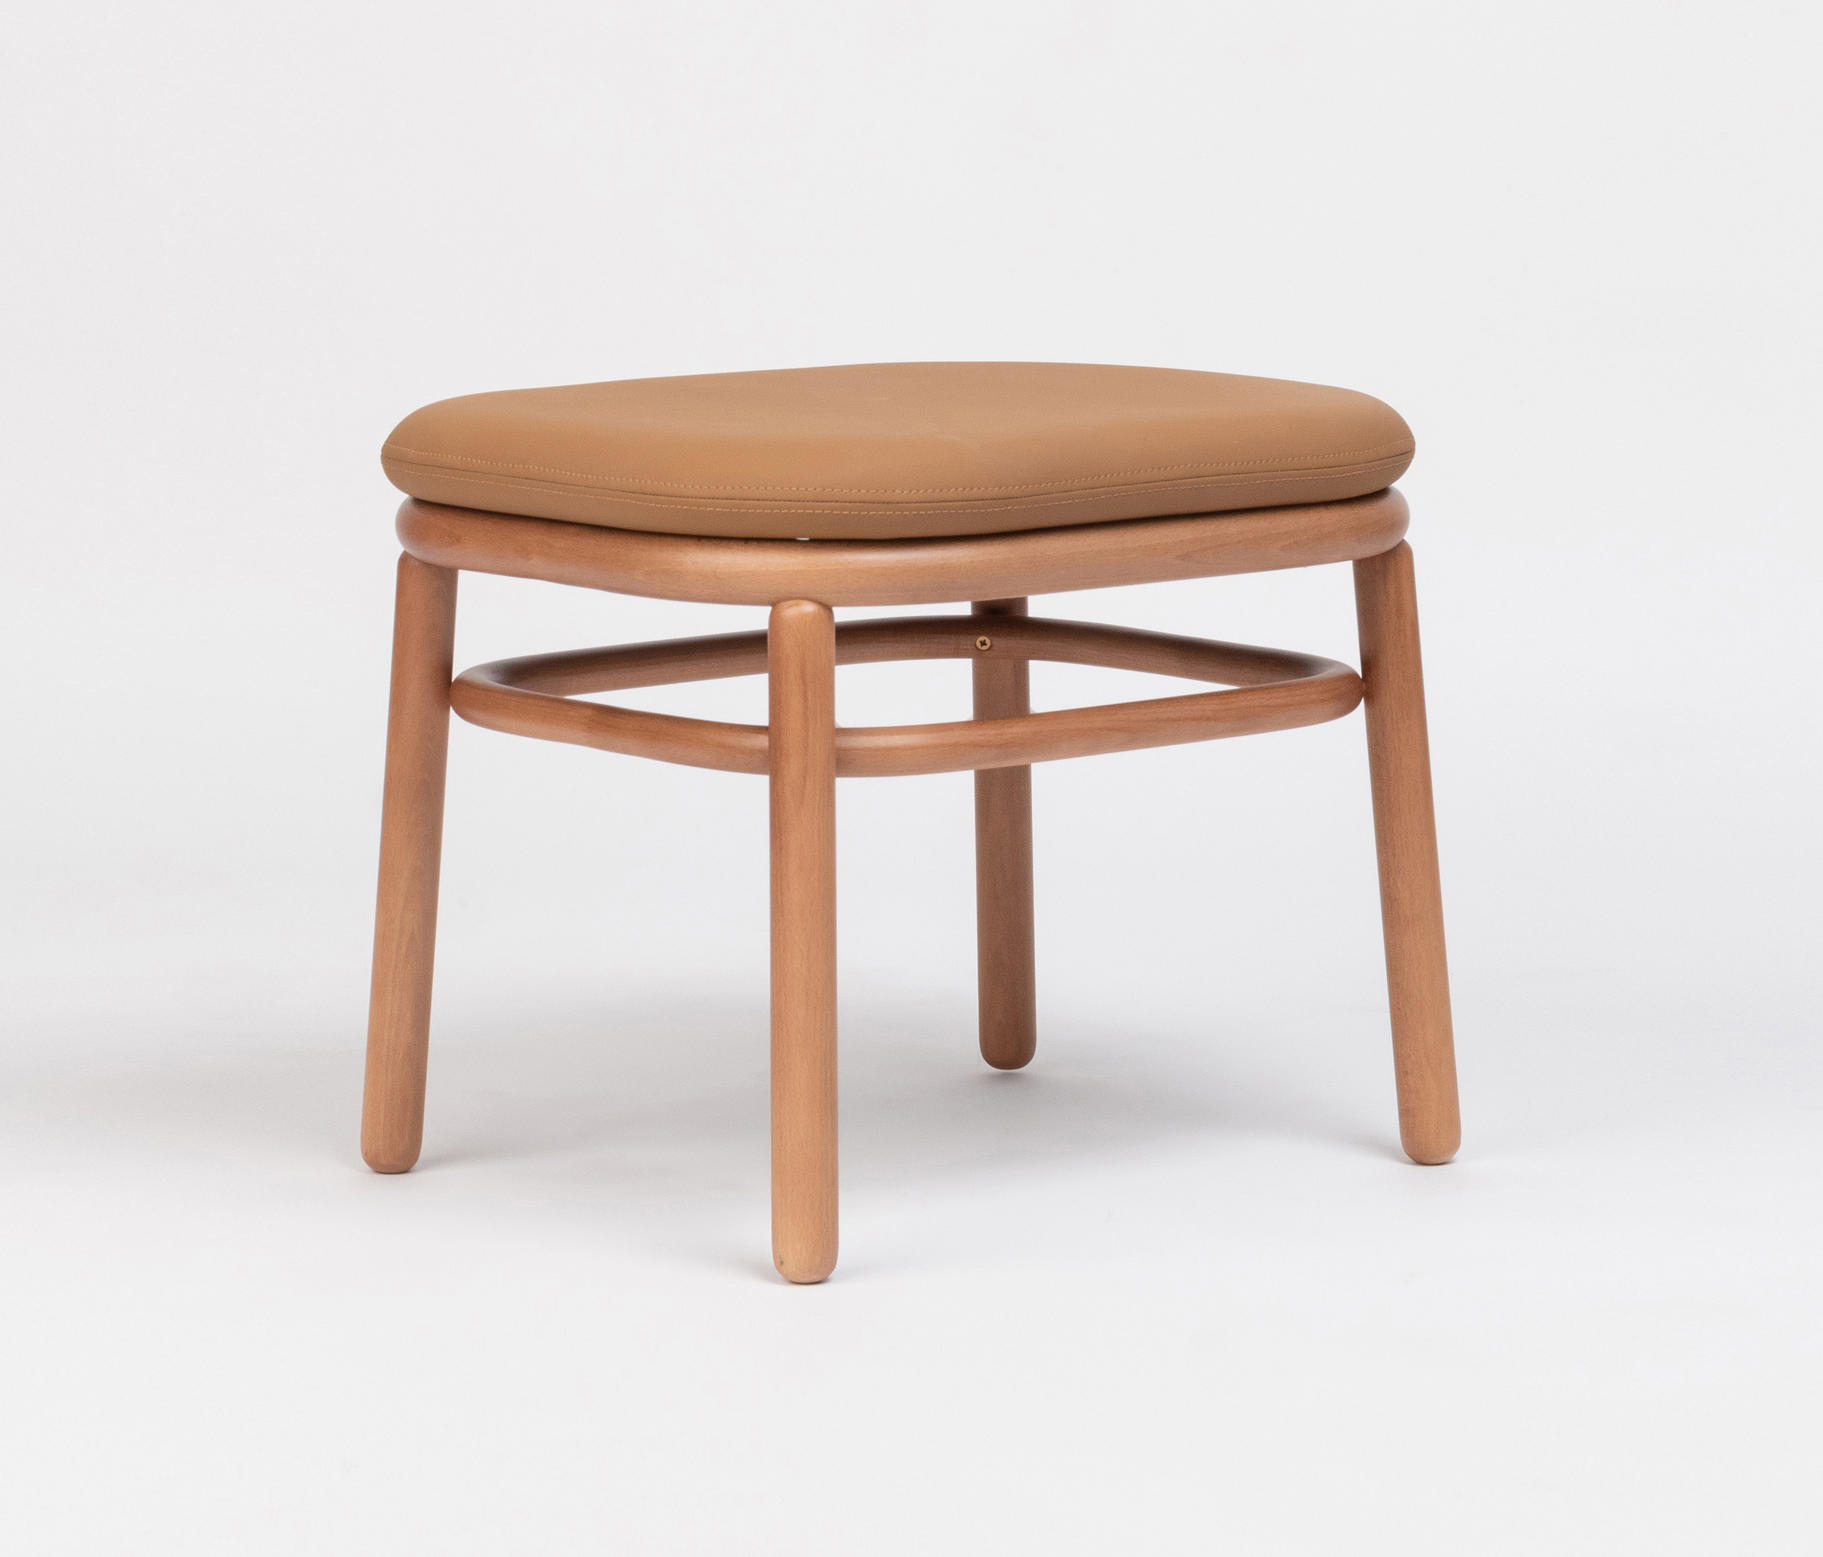 Lana Ottoman Wood & mobili designer | Architonic